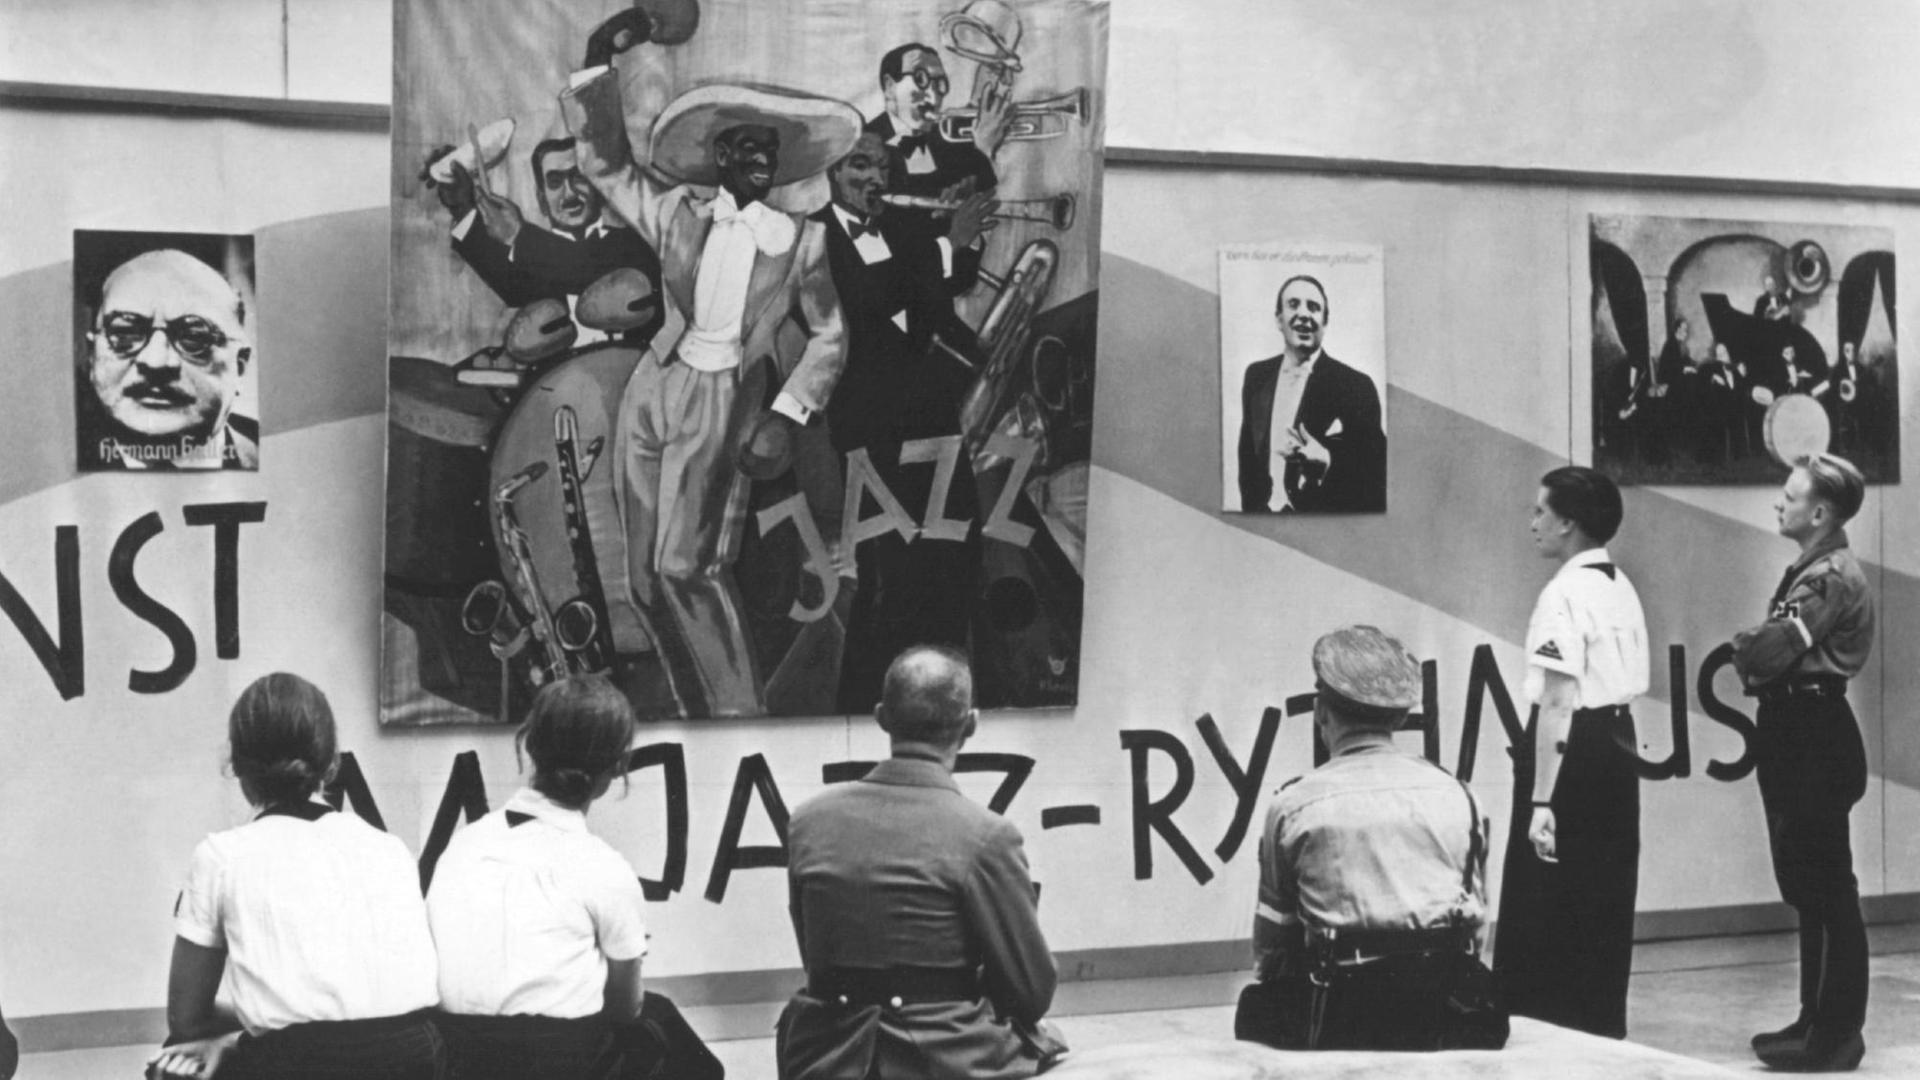 Zuschauer betrachten Exponate in der Ausstellung "Entartete Musik", die als Gegenstück zur Ausstellung "Entartete Kunst" im Rahmen der Reichsmusik-Festwoche veranstaltet wurde (undatierte Aufnahme).